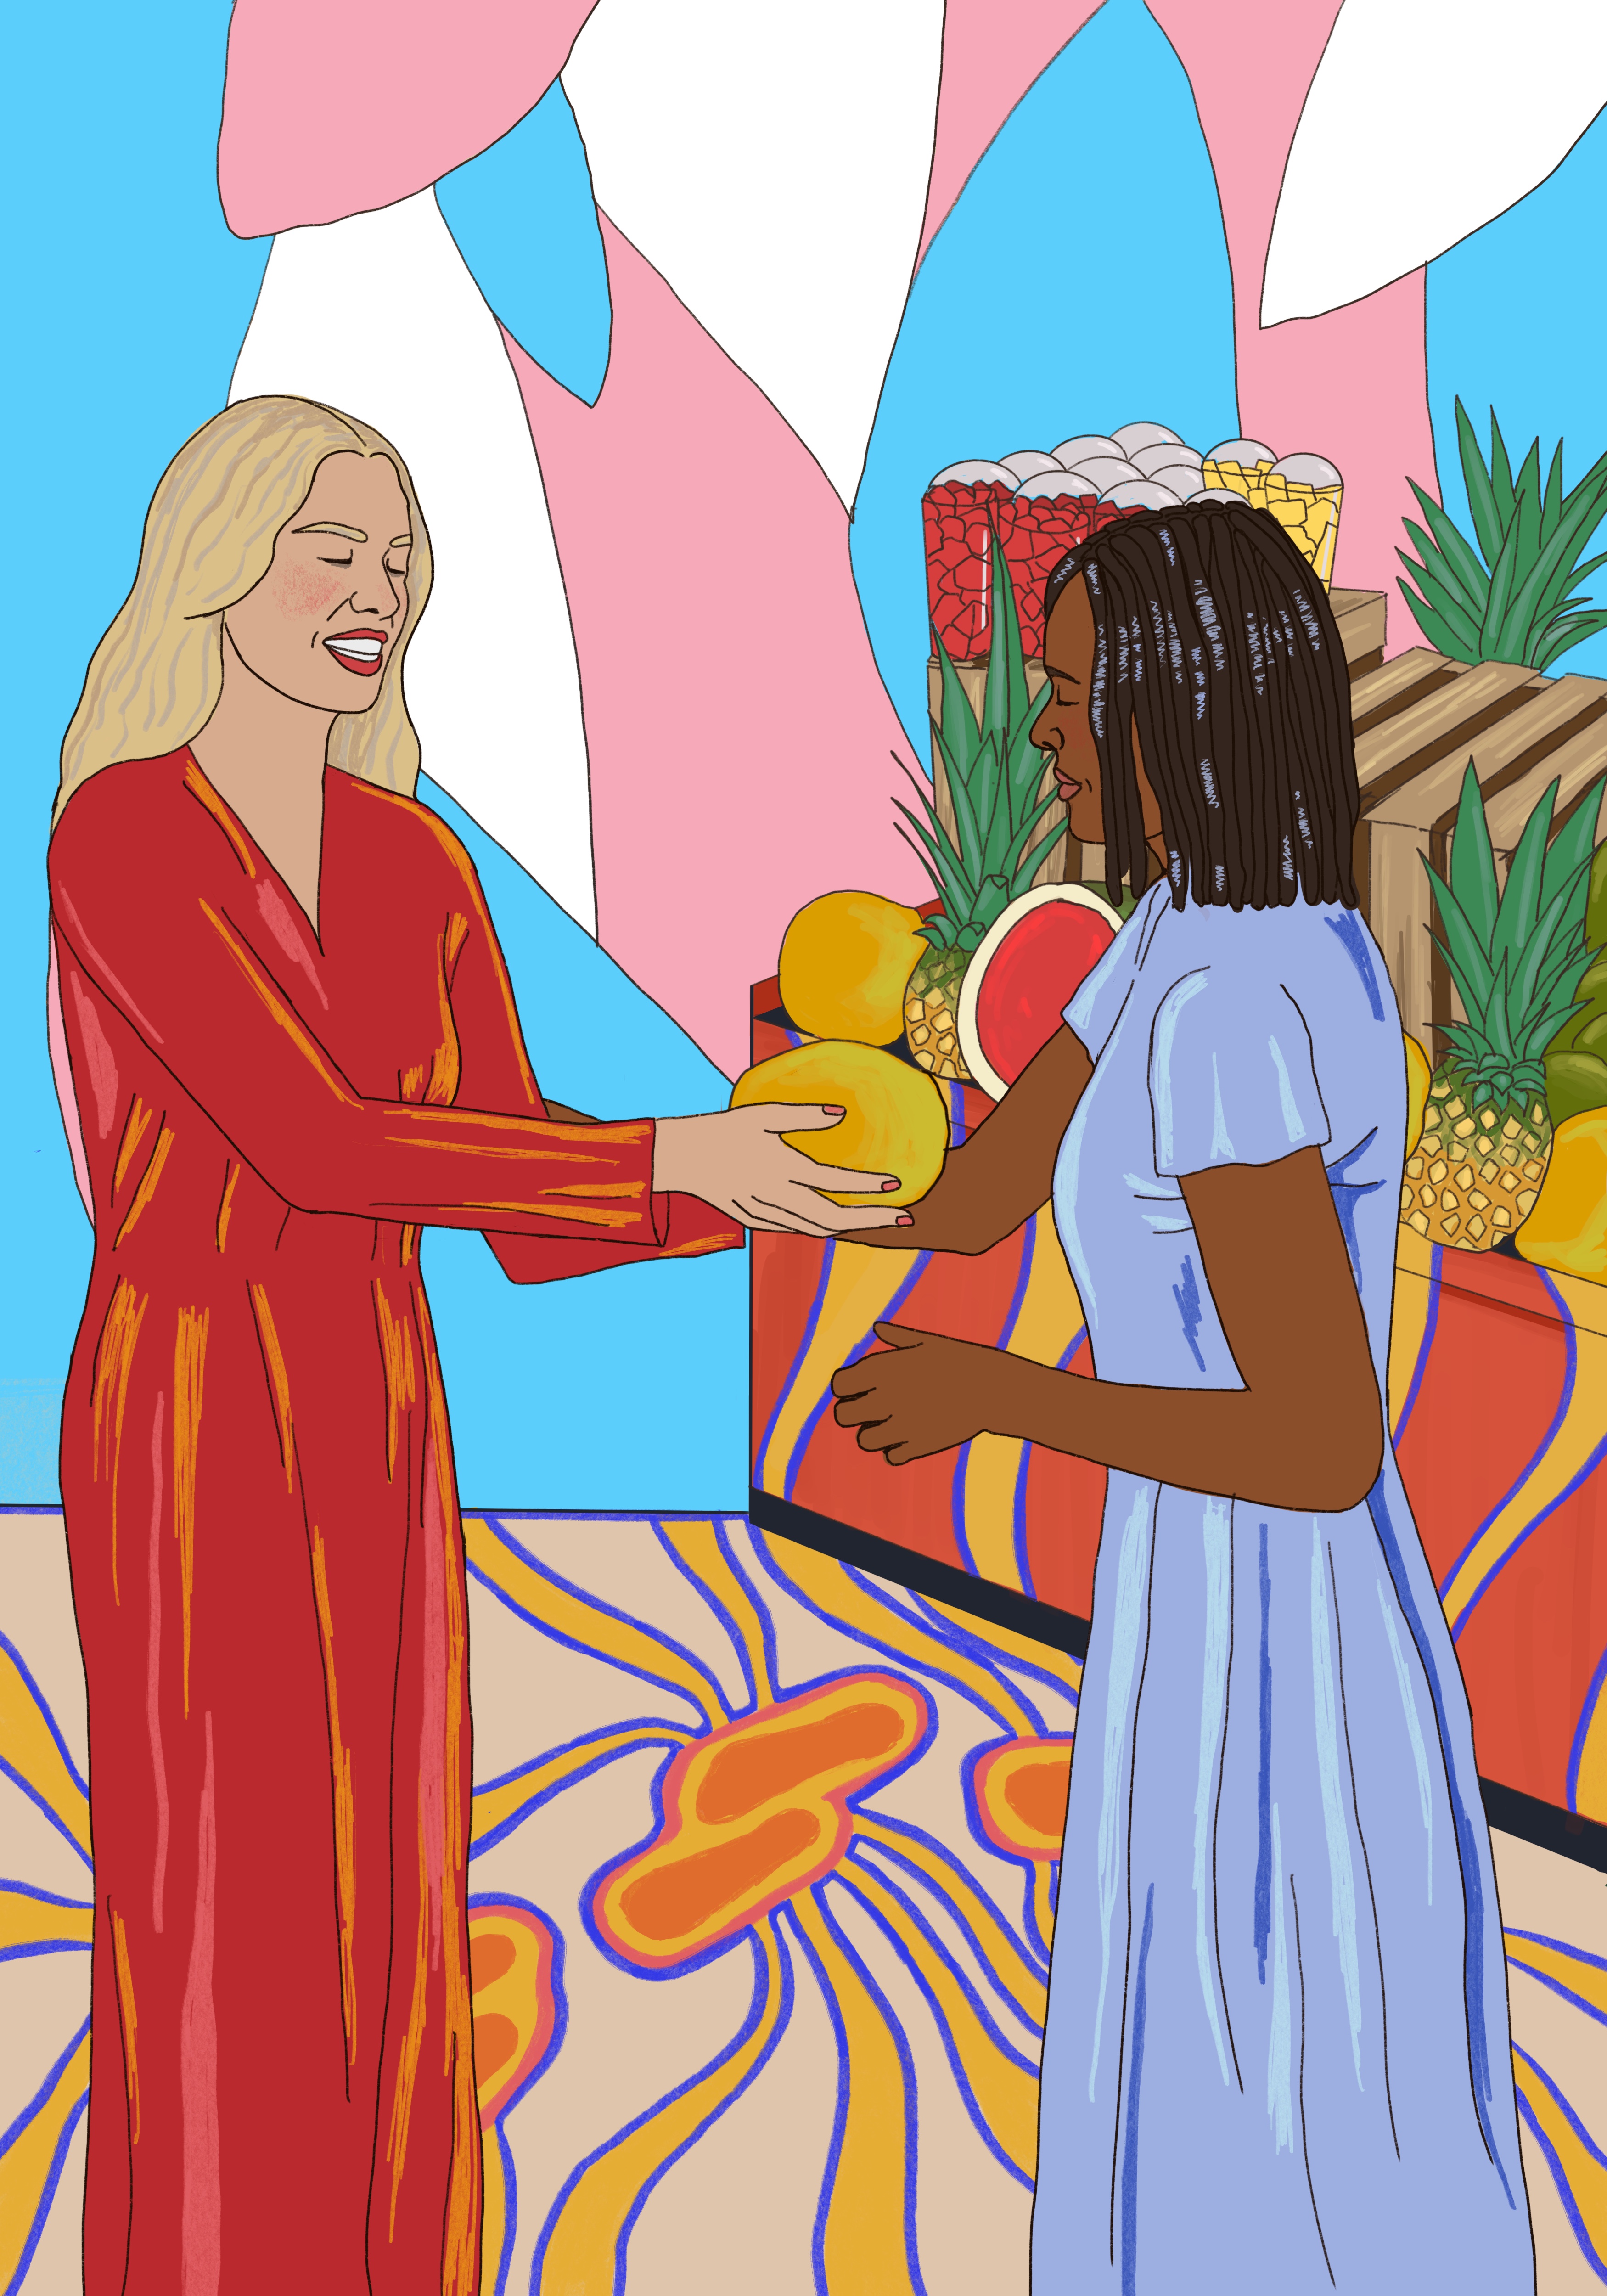 Ilustración de una mujer dando comida a otra mujer.